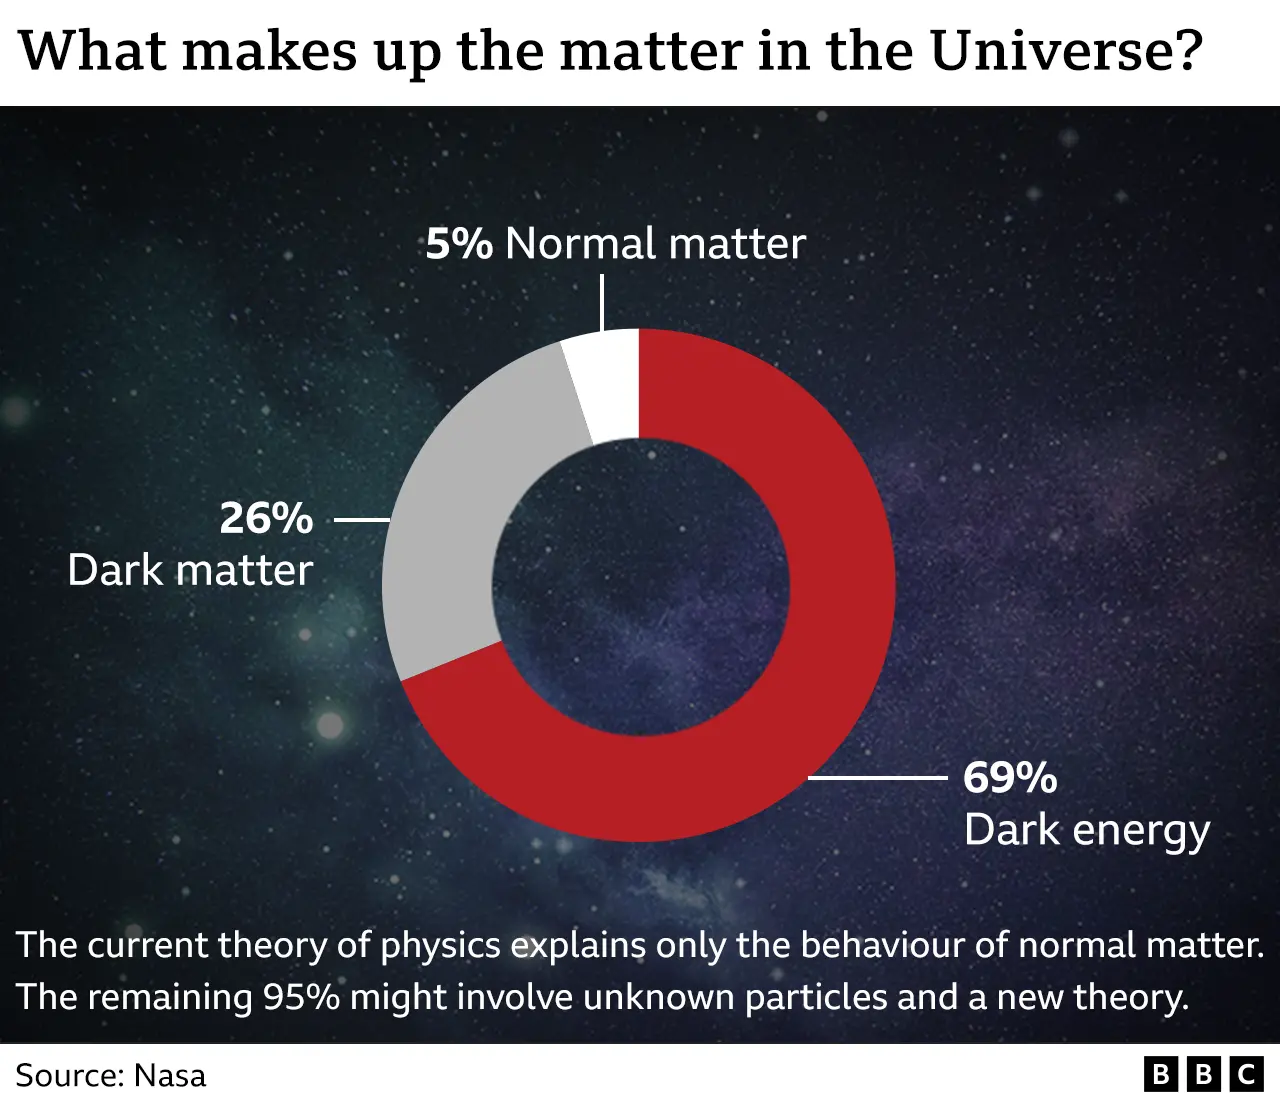 Γραφικό που απεικονίζει την κατανομή της ύλης στο Σύμπαν - 26% σκοτεινή ύλη, 69% σκοτεινή ενέργεια και 5% κανονική ύλη